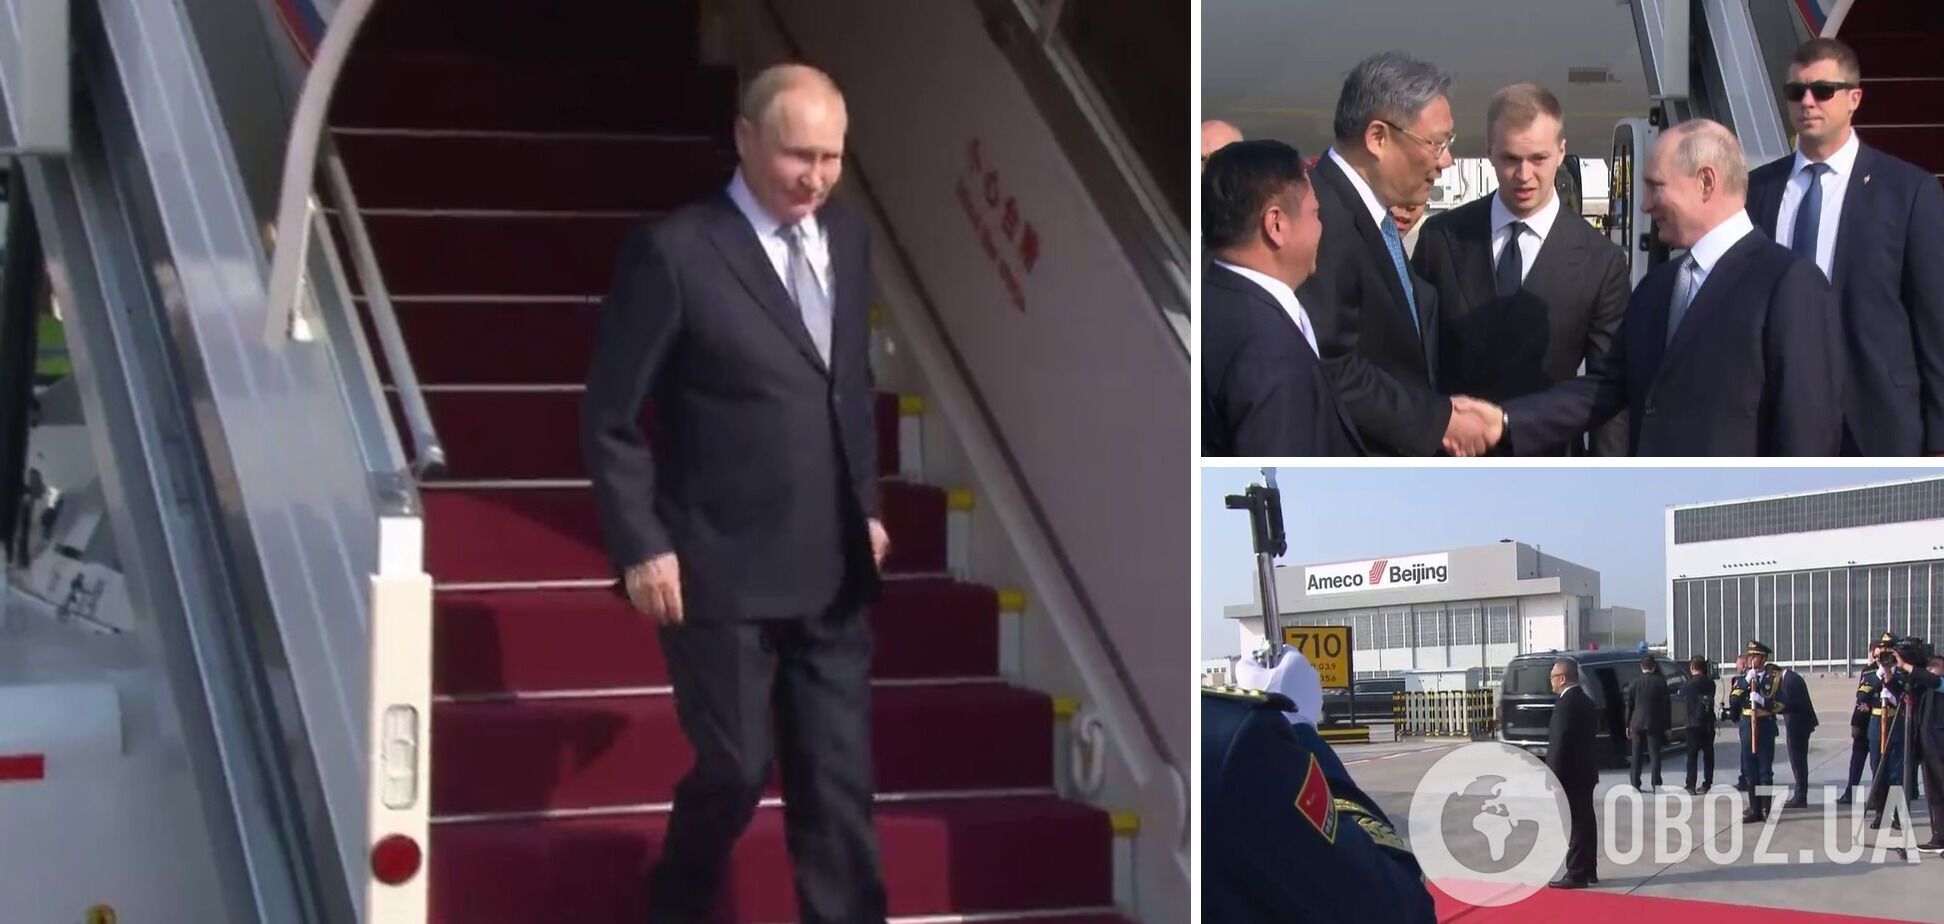 Путин прибыл в Китай и встретился с Си Цзиньпином: что стоит за союзом Москвы и Пекина и какие угрозы для Украины